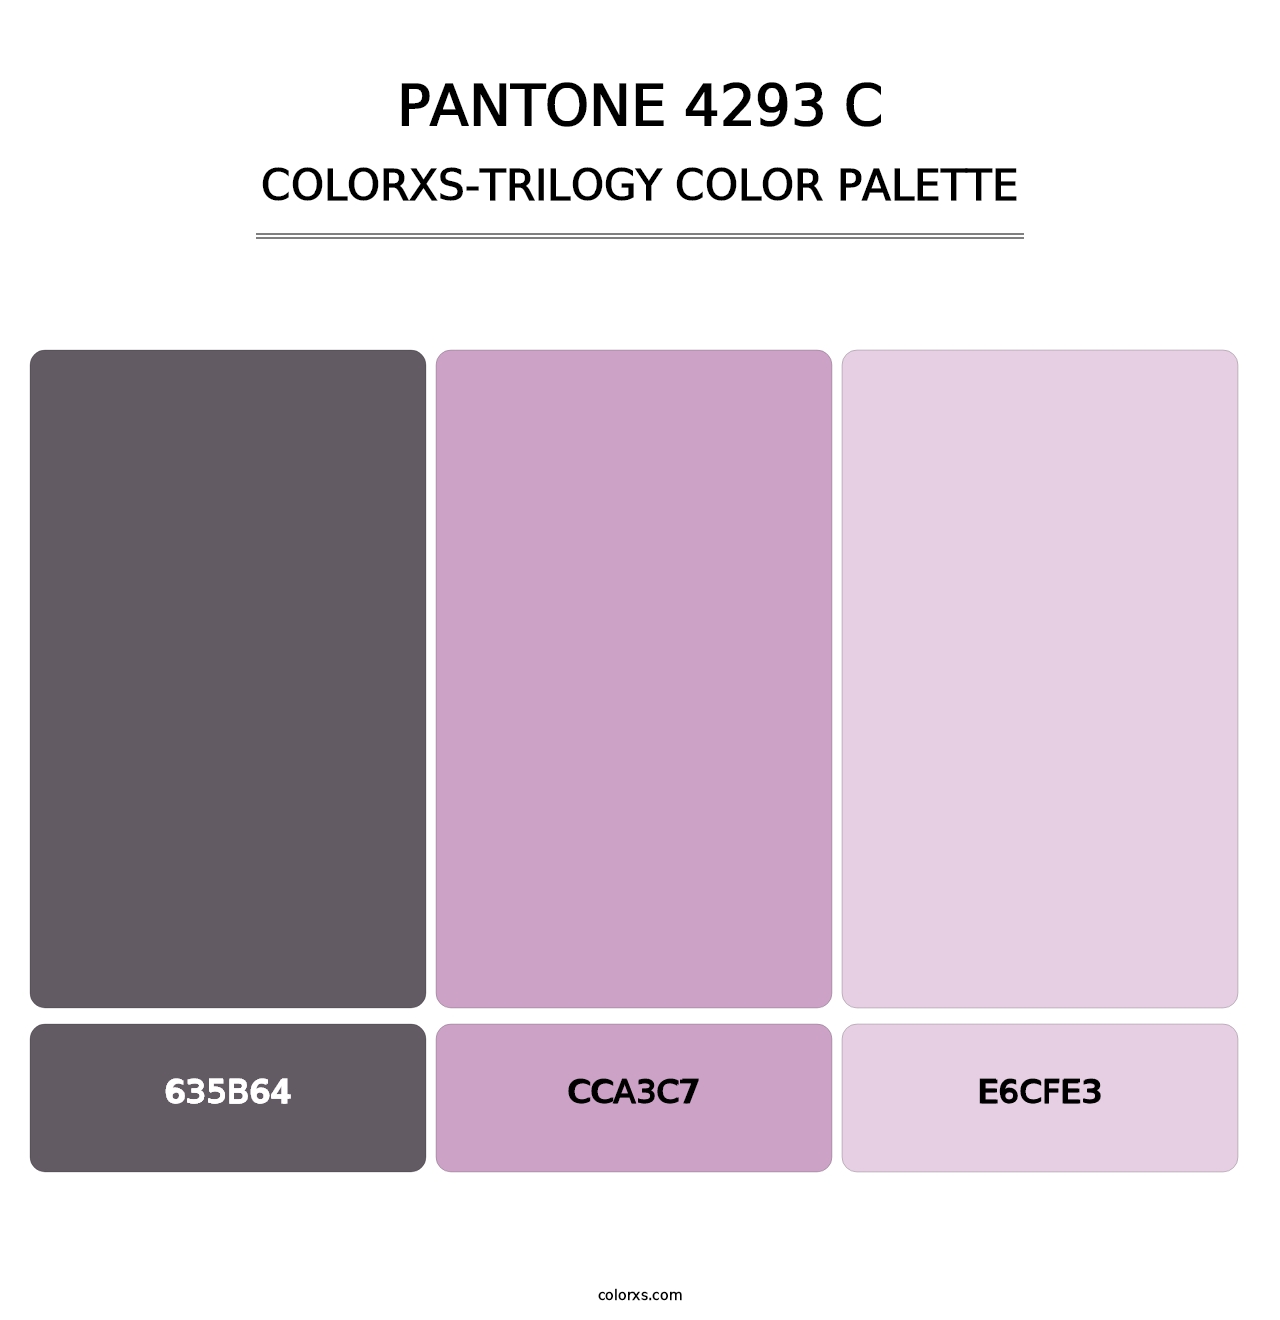 PANTONE 4293 C - Colorxs Trilogy Palette